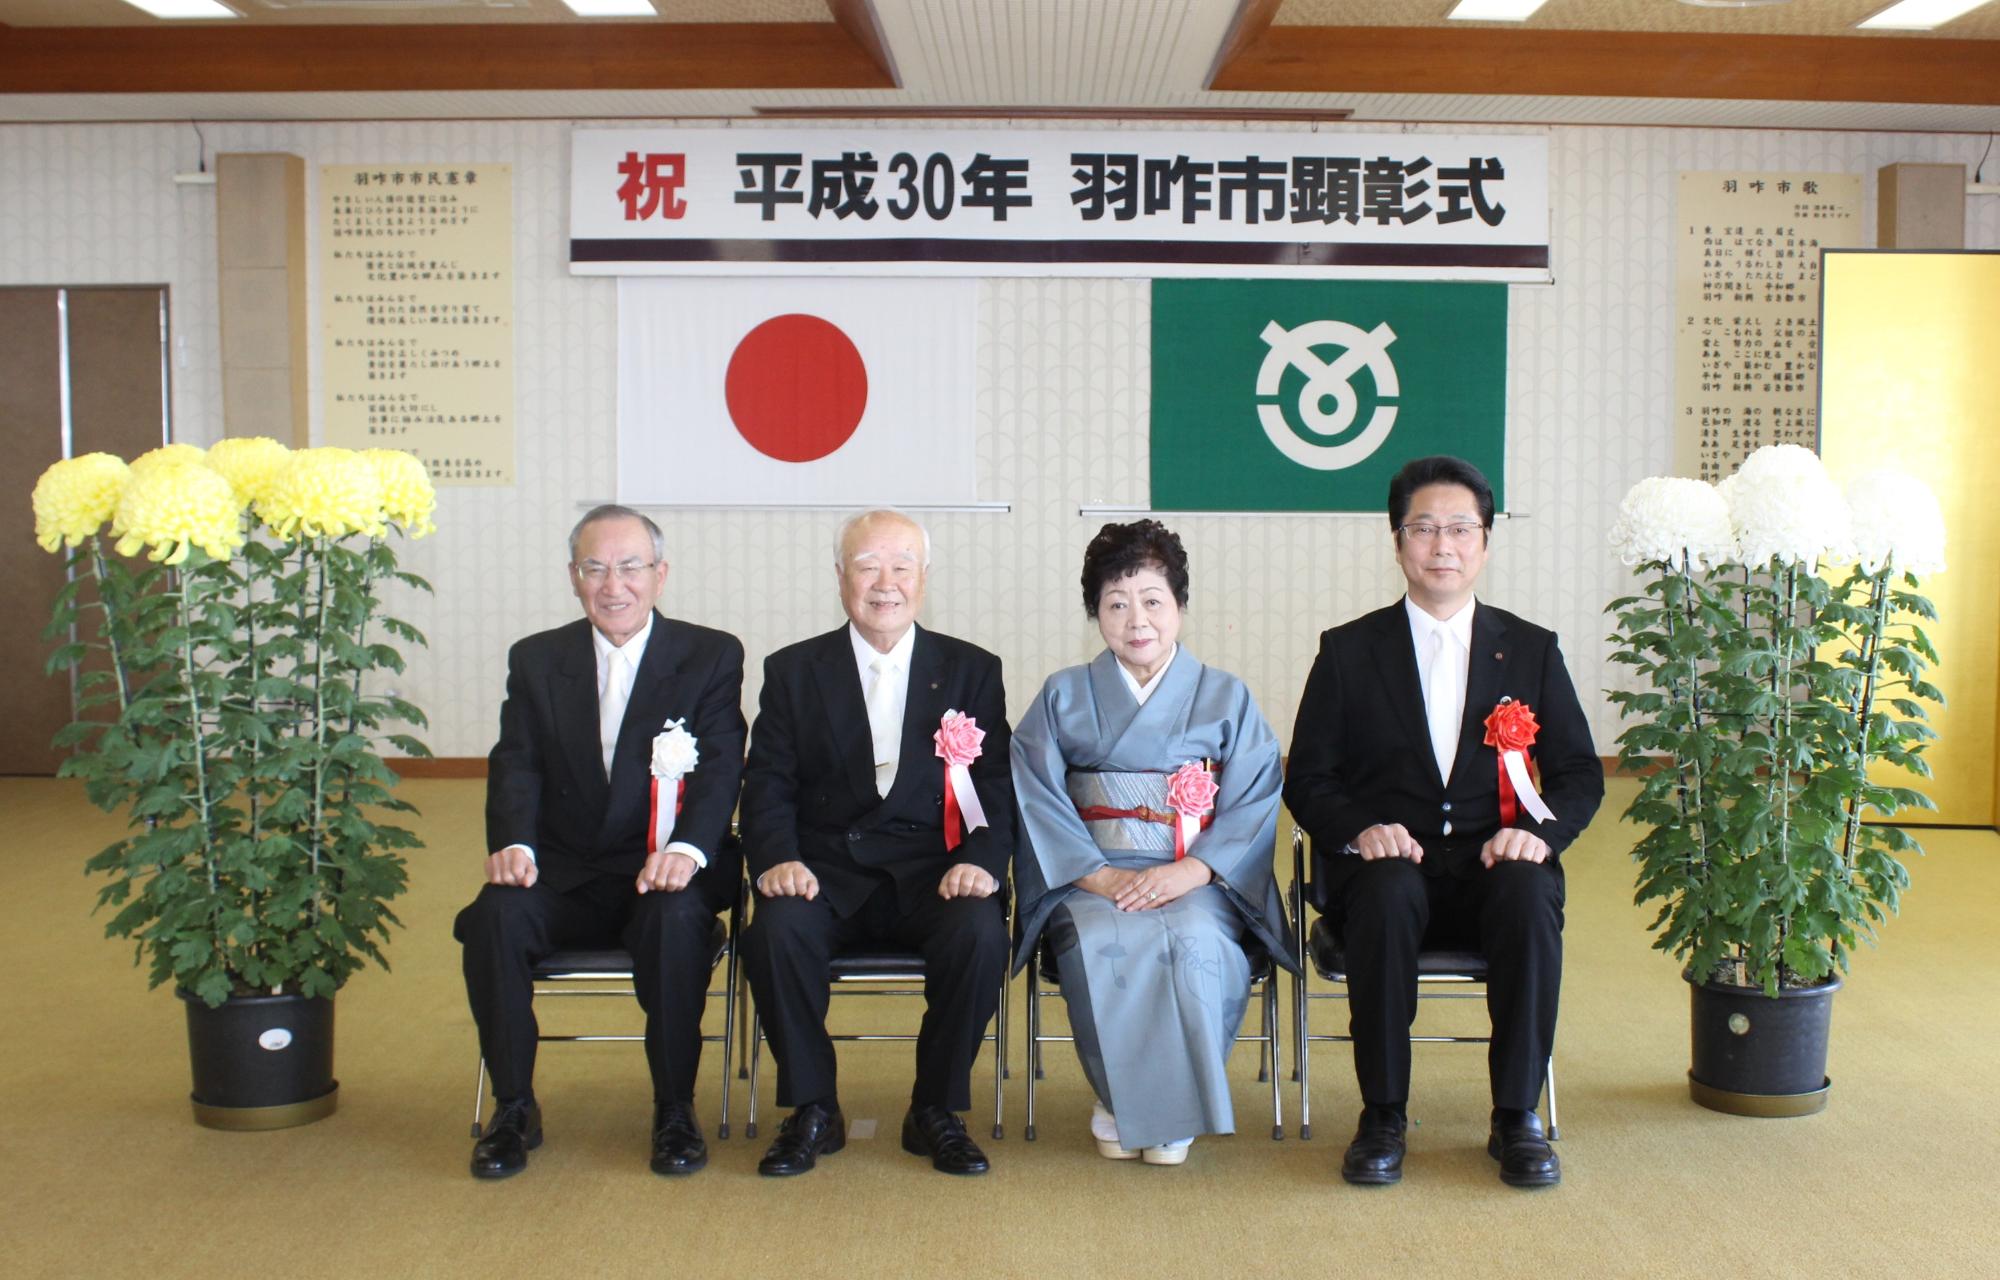 左から山辺市長、久保順一さん、妻の房子さん、櫻井議長